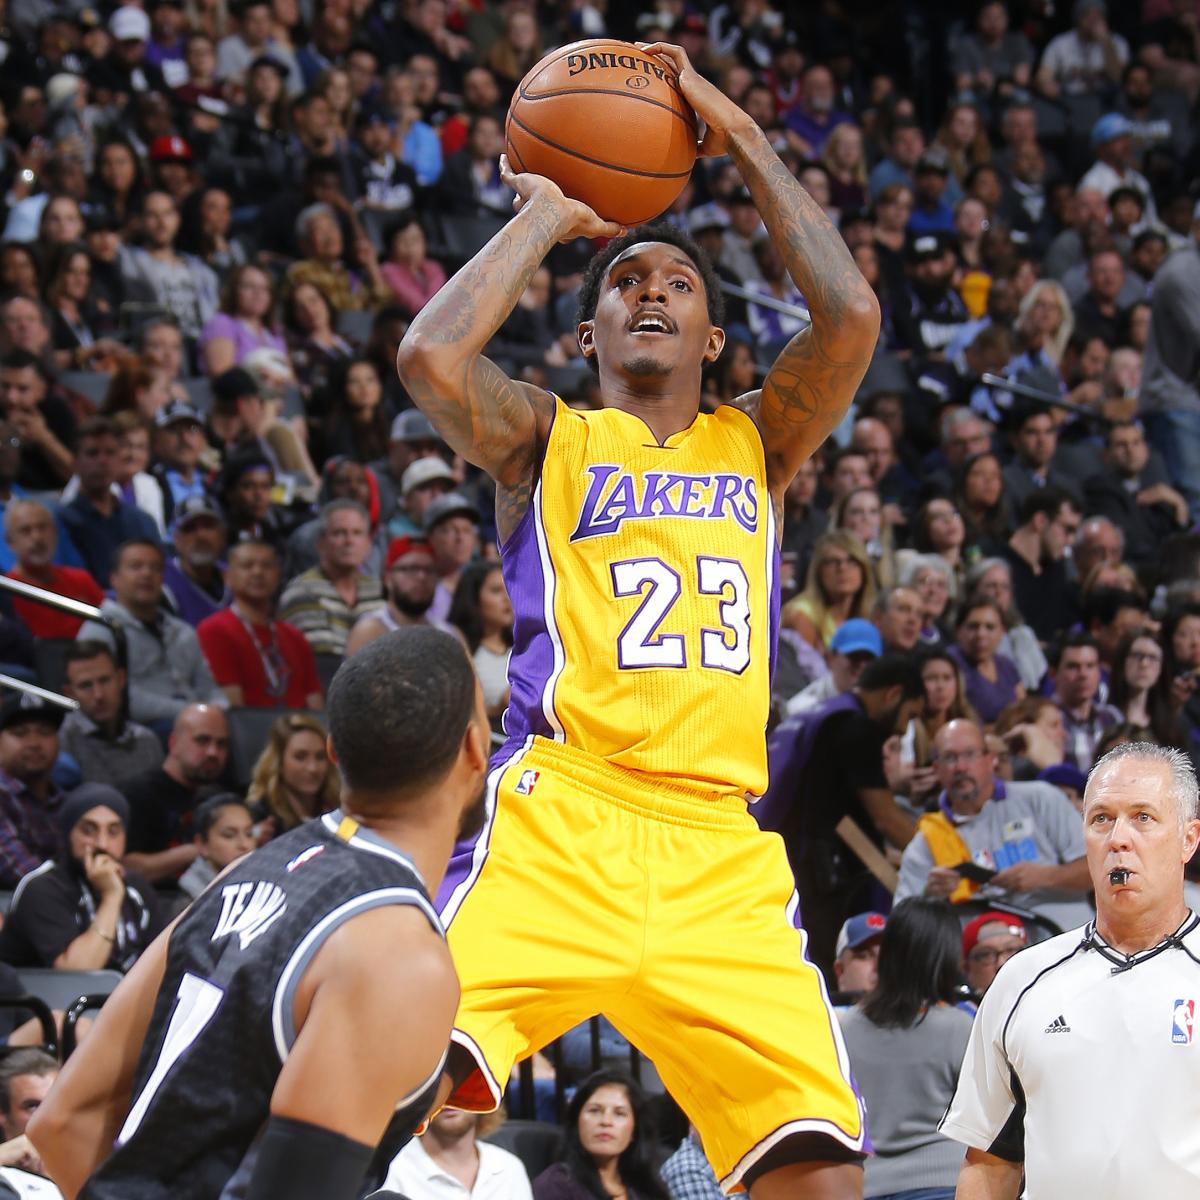 Lakers vs. Kings: Score, Highlights, Reaction from 2016 Regular Season | Bleacher ...